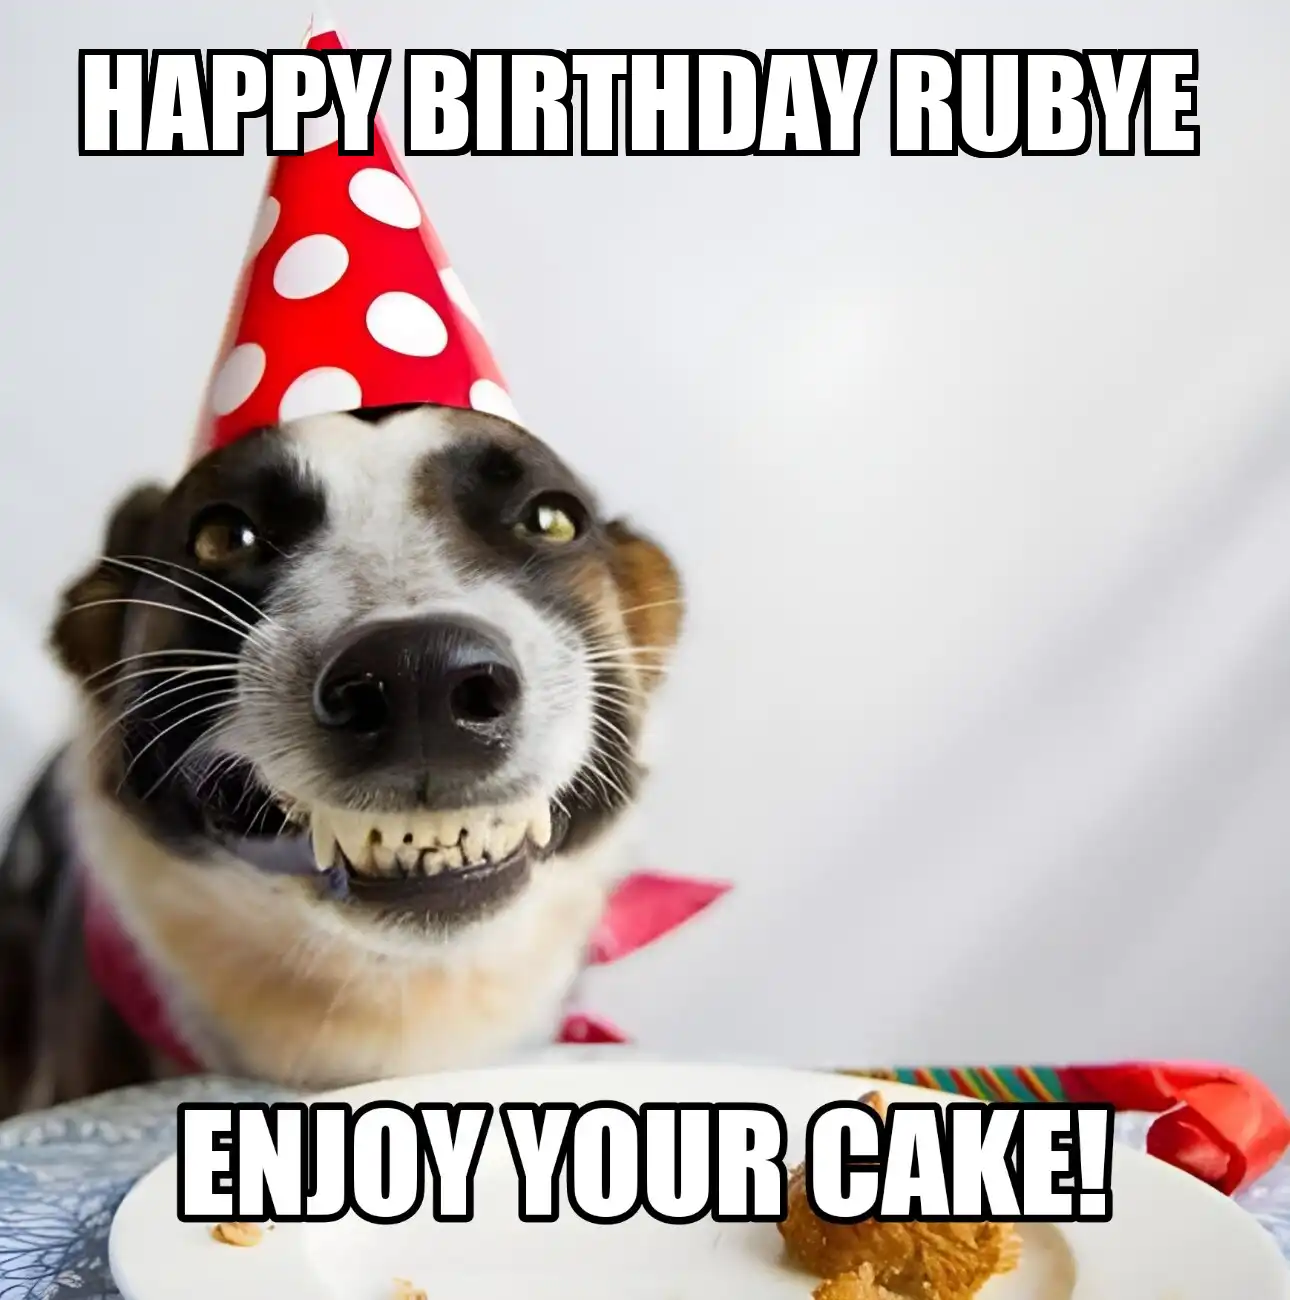 Happy Birthday Rubye Enjoy Your Cake Dog Meme